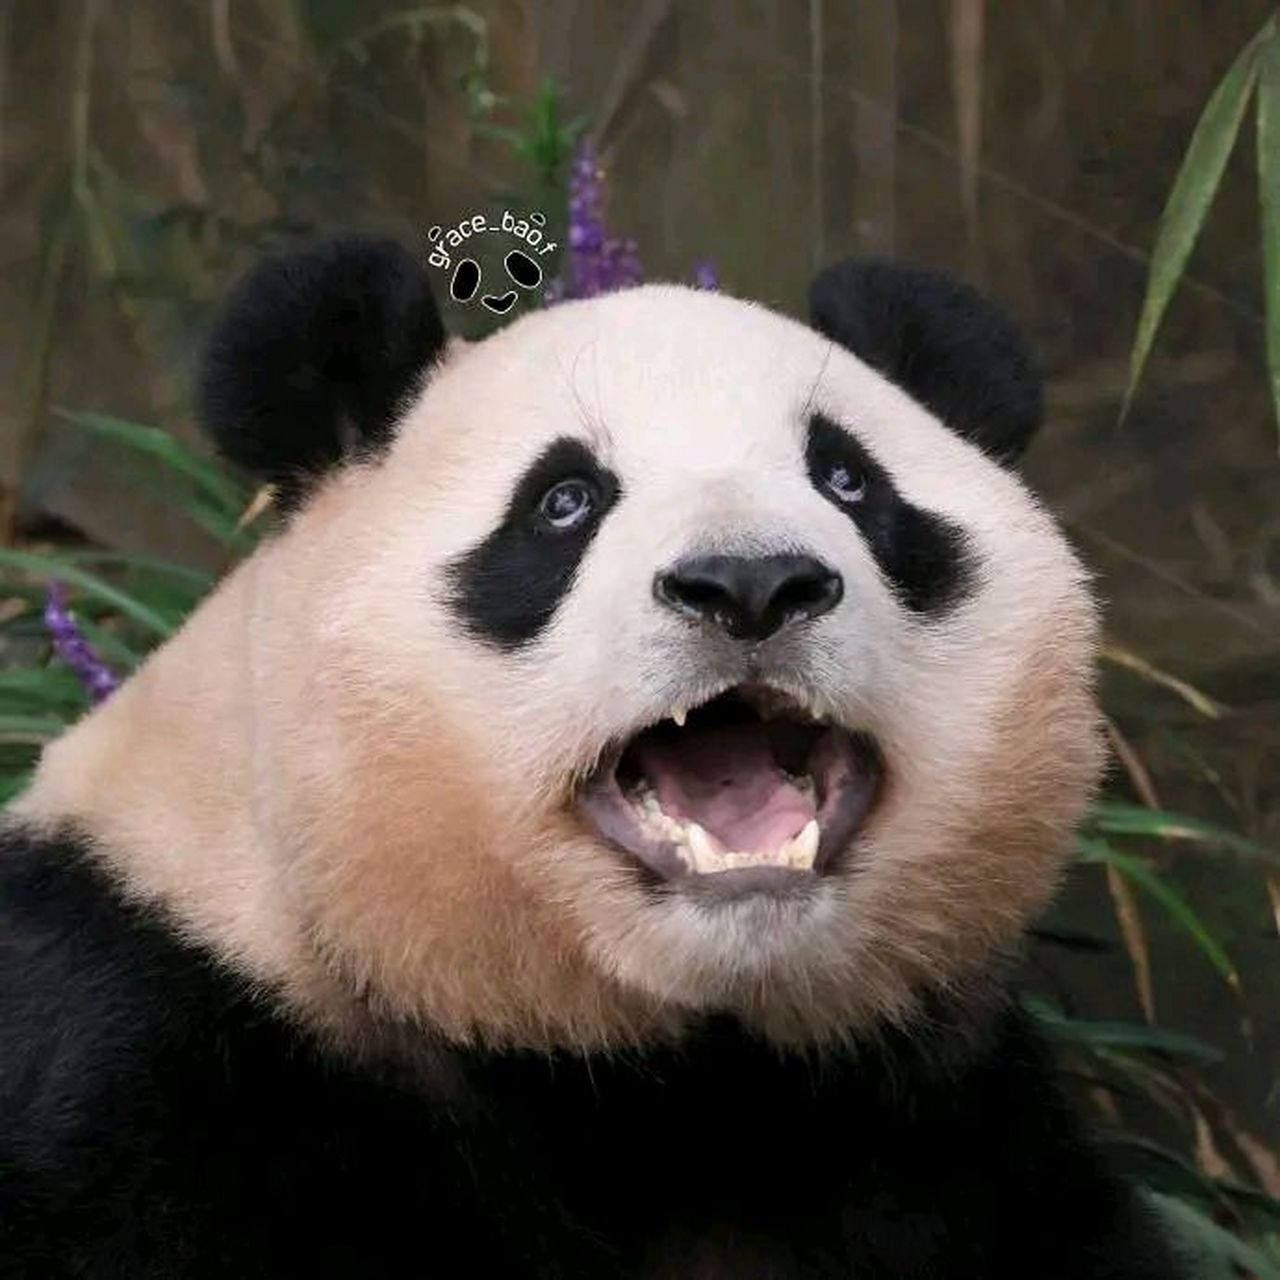 熊猫张大嘴巴表情包图片